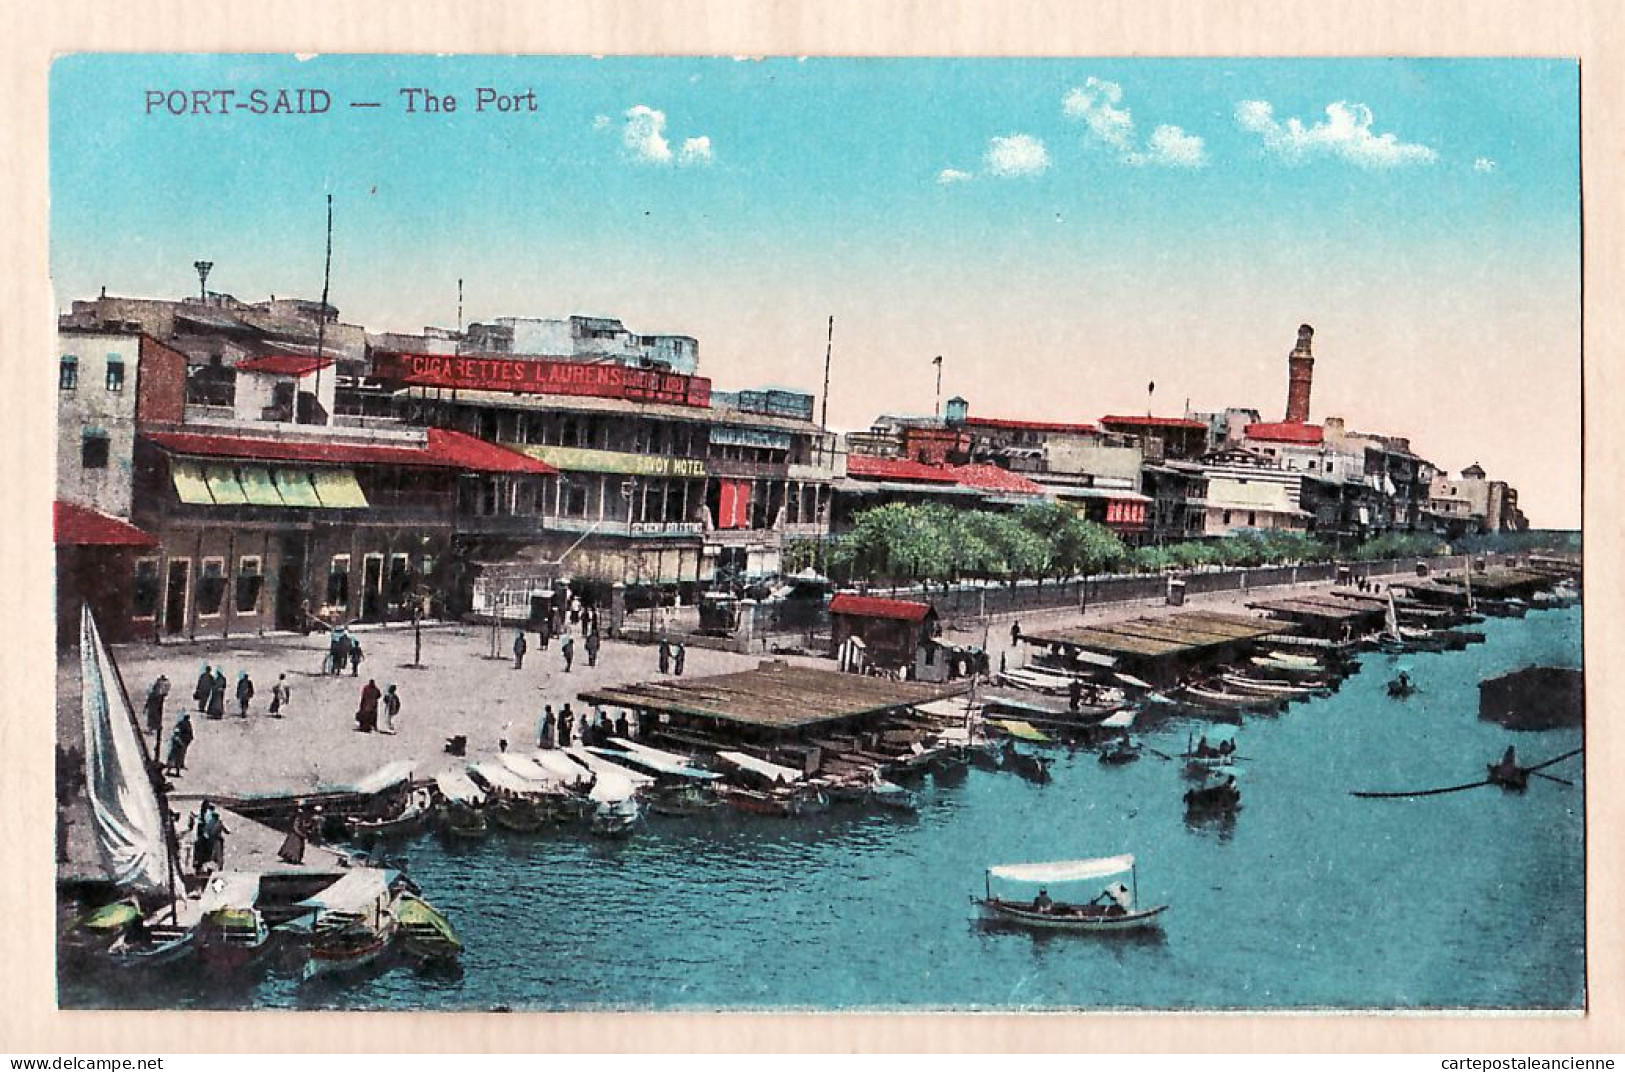 01851 / Egypt SUEZ PORT-SAÏD The Port Cigarettes Laurens SAVOY Hotel 1910s Litho Color CAIRO TRUST 499 Egypte Agypten  - Port-Saïd